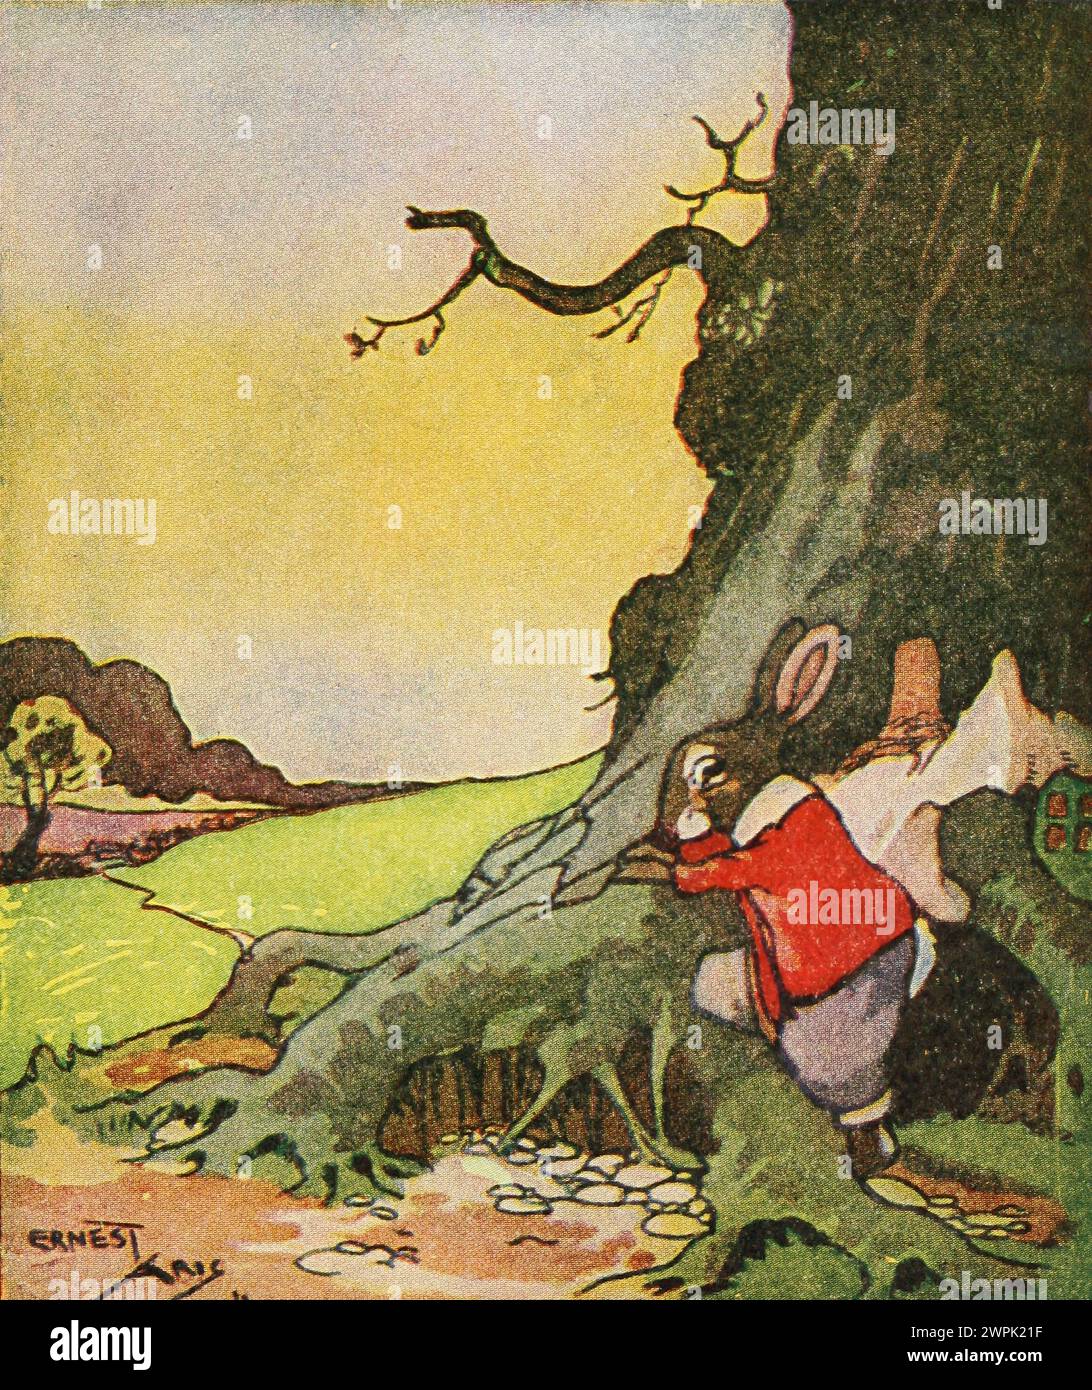 Peter Rabbit und seine Mutter von Louise A Field, illustriert von Virginia Albert; basierend auf Beatrix Potter-Charakteren läuft Peter Rabbit wegen der strengen Regeln seiner Mutter weg, kommt aber nicht sehr weit, weil er im Kreis reist. Stockfoto